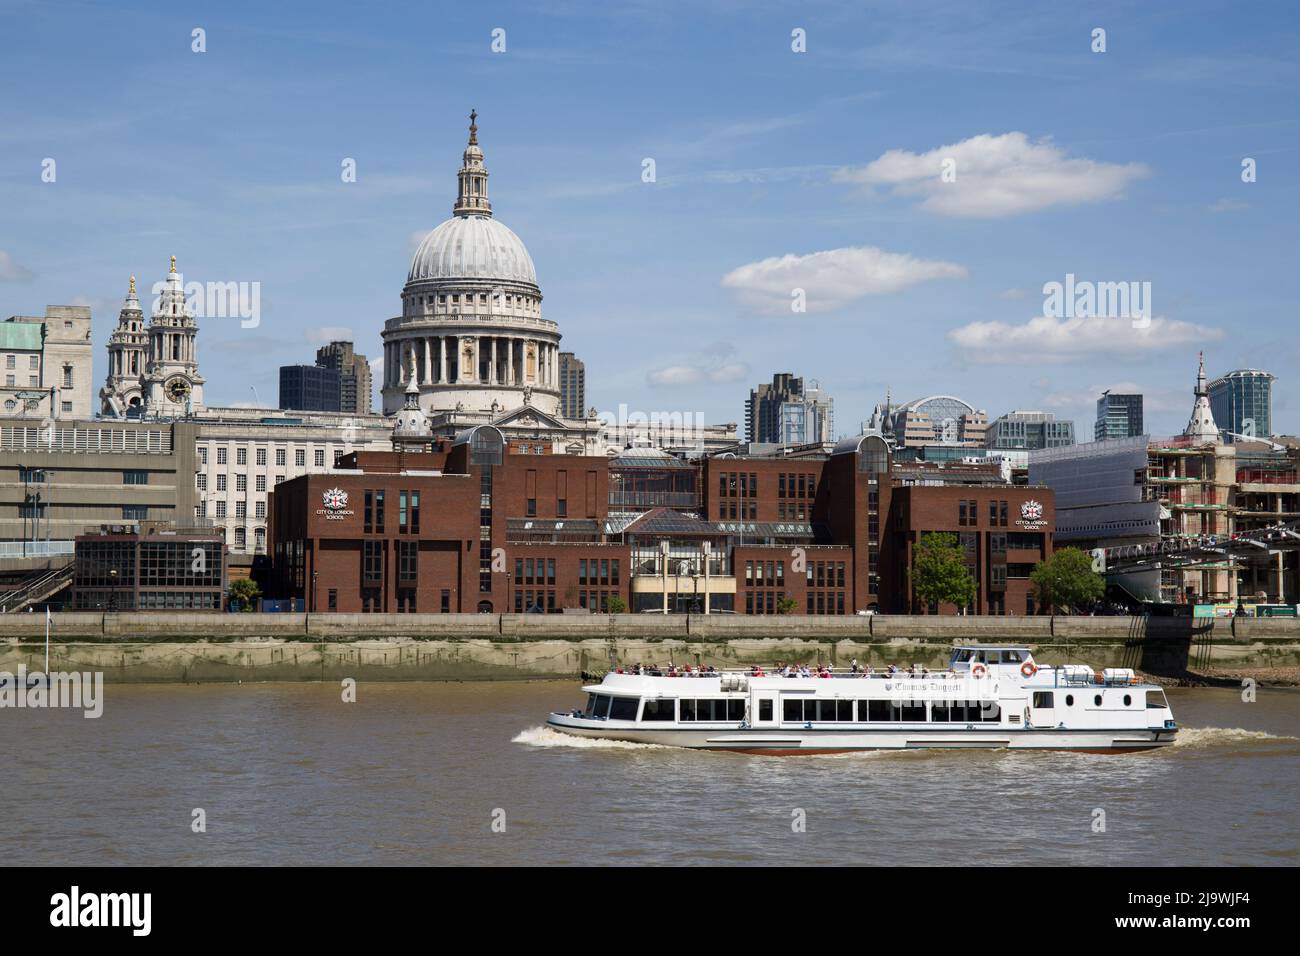 Un bateau touristique passe devant la cathédrale Saint-Paul sur la Tamise à Londres Banque D'Images